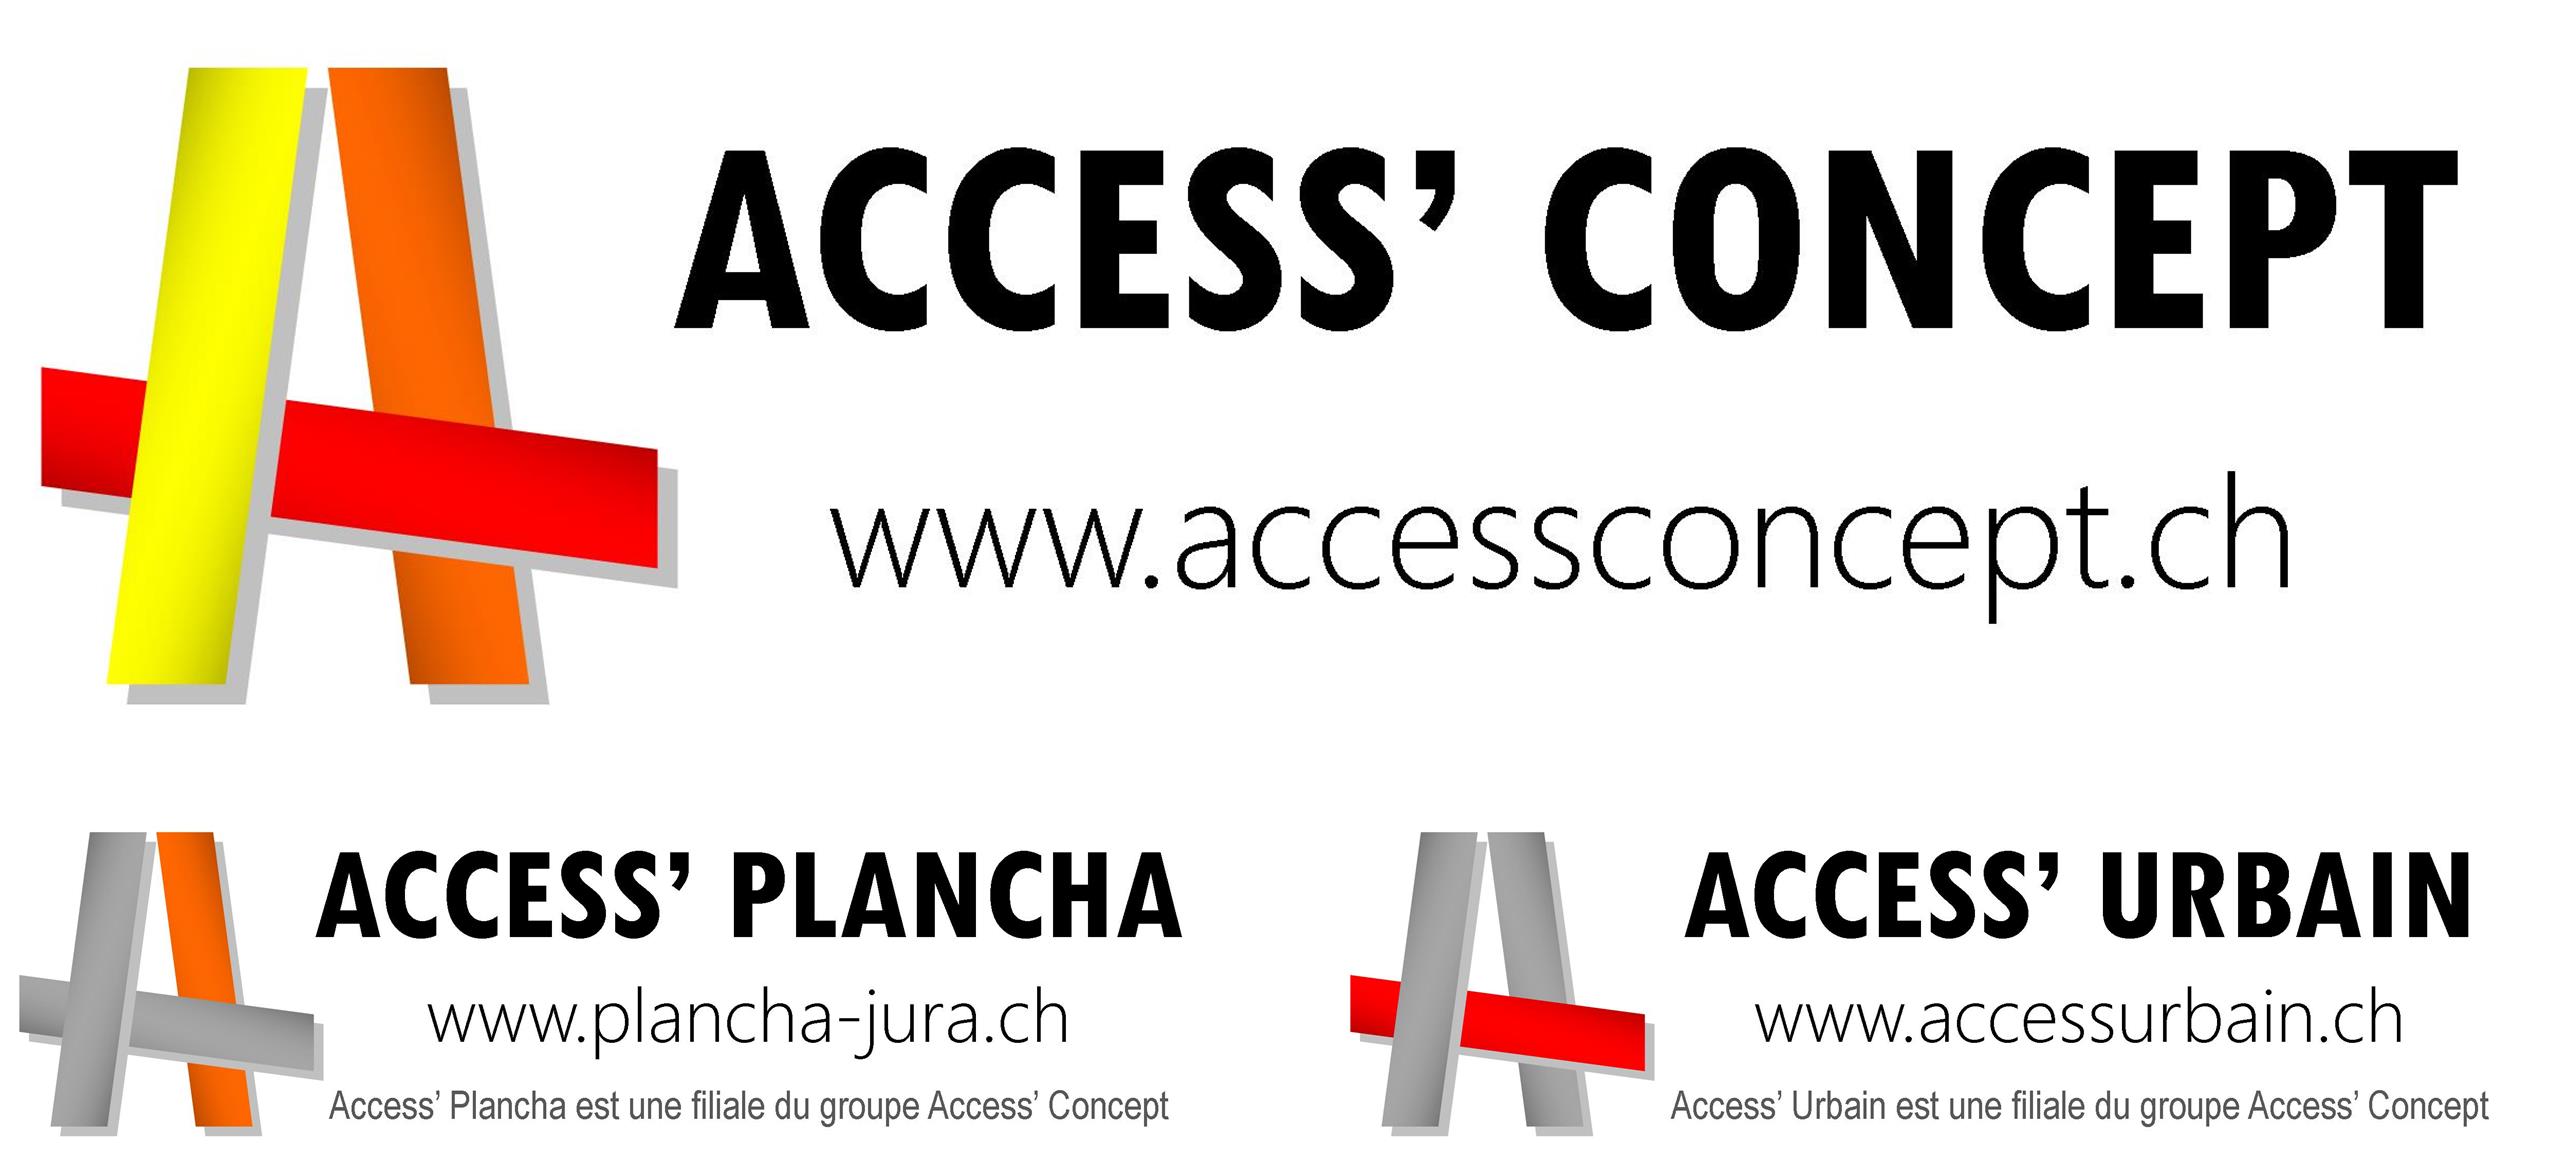 Access' Concept